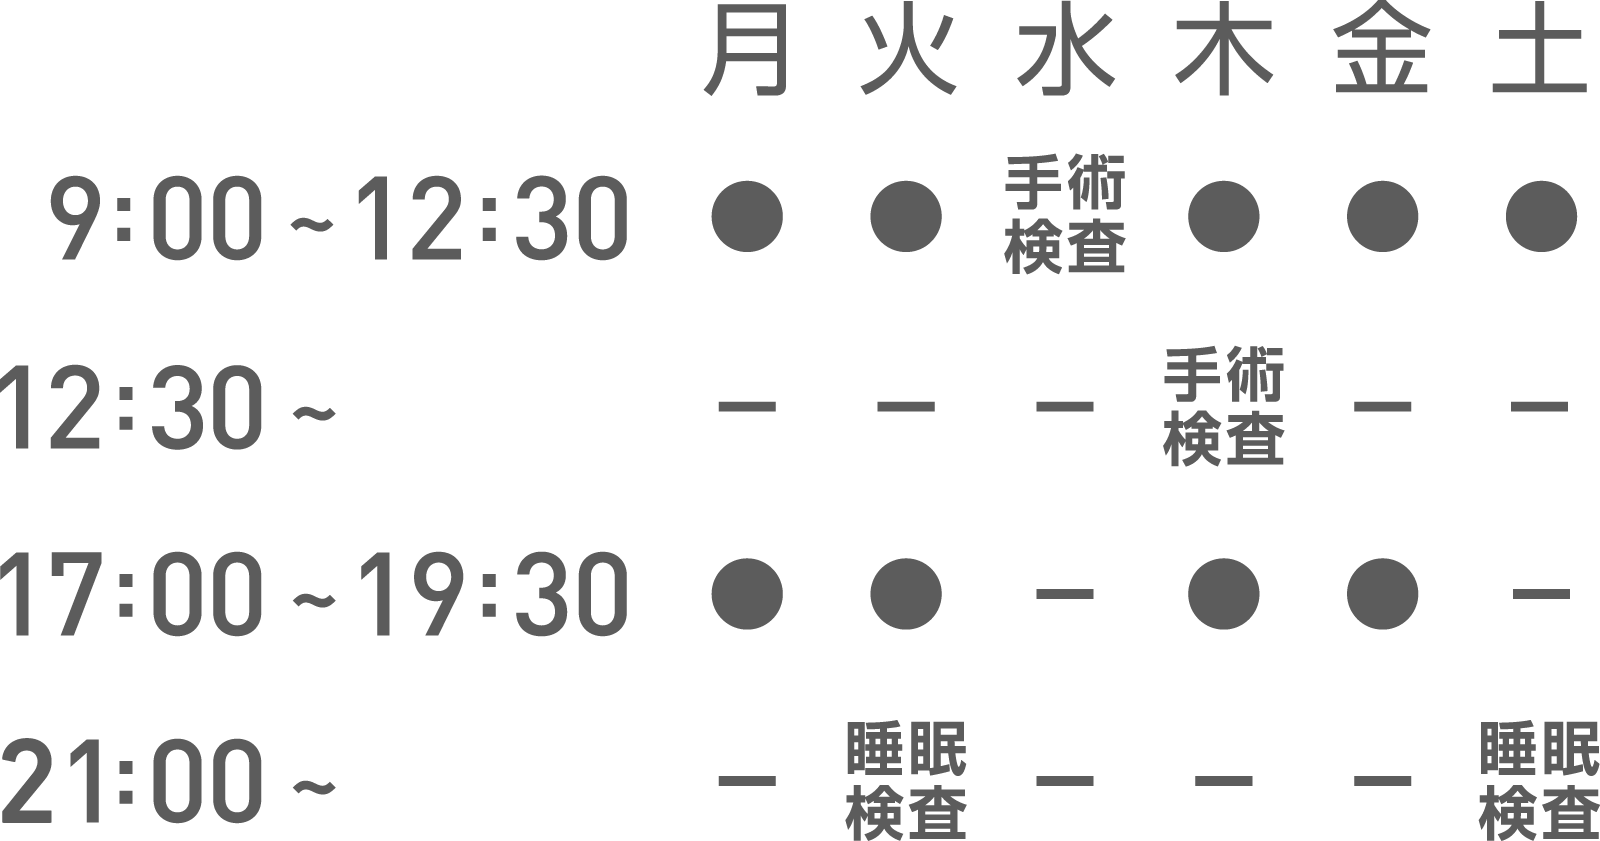 京都の耳鼻科 大岡医院 七条診療所の地図・診療時間